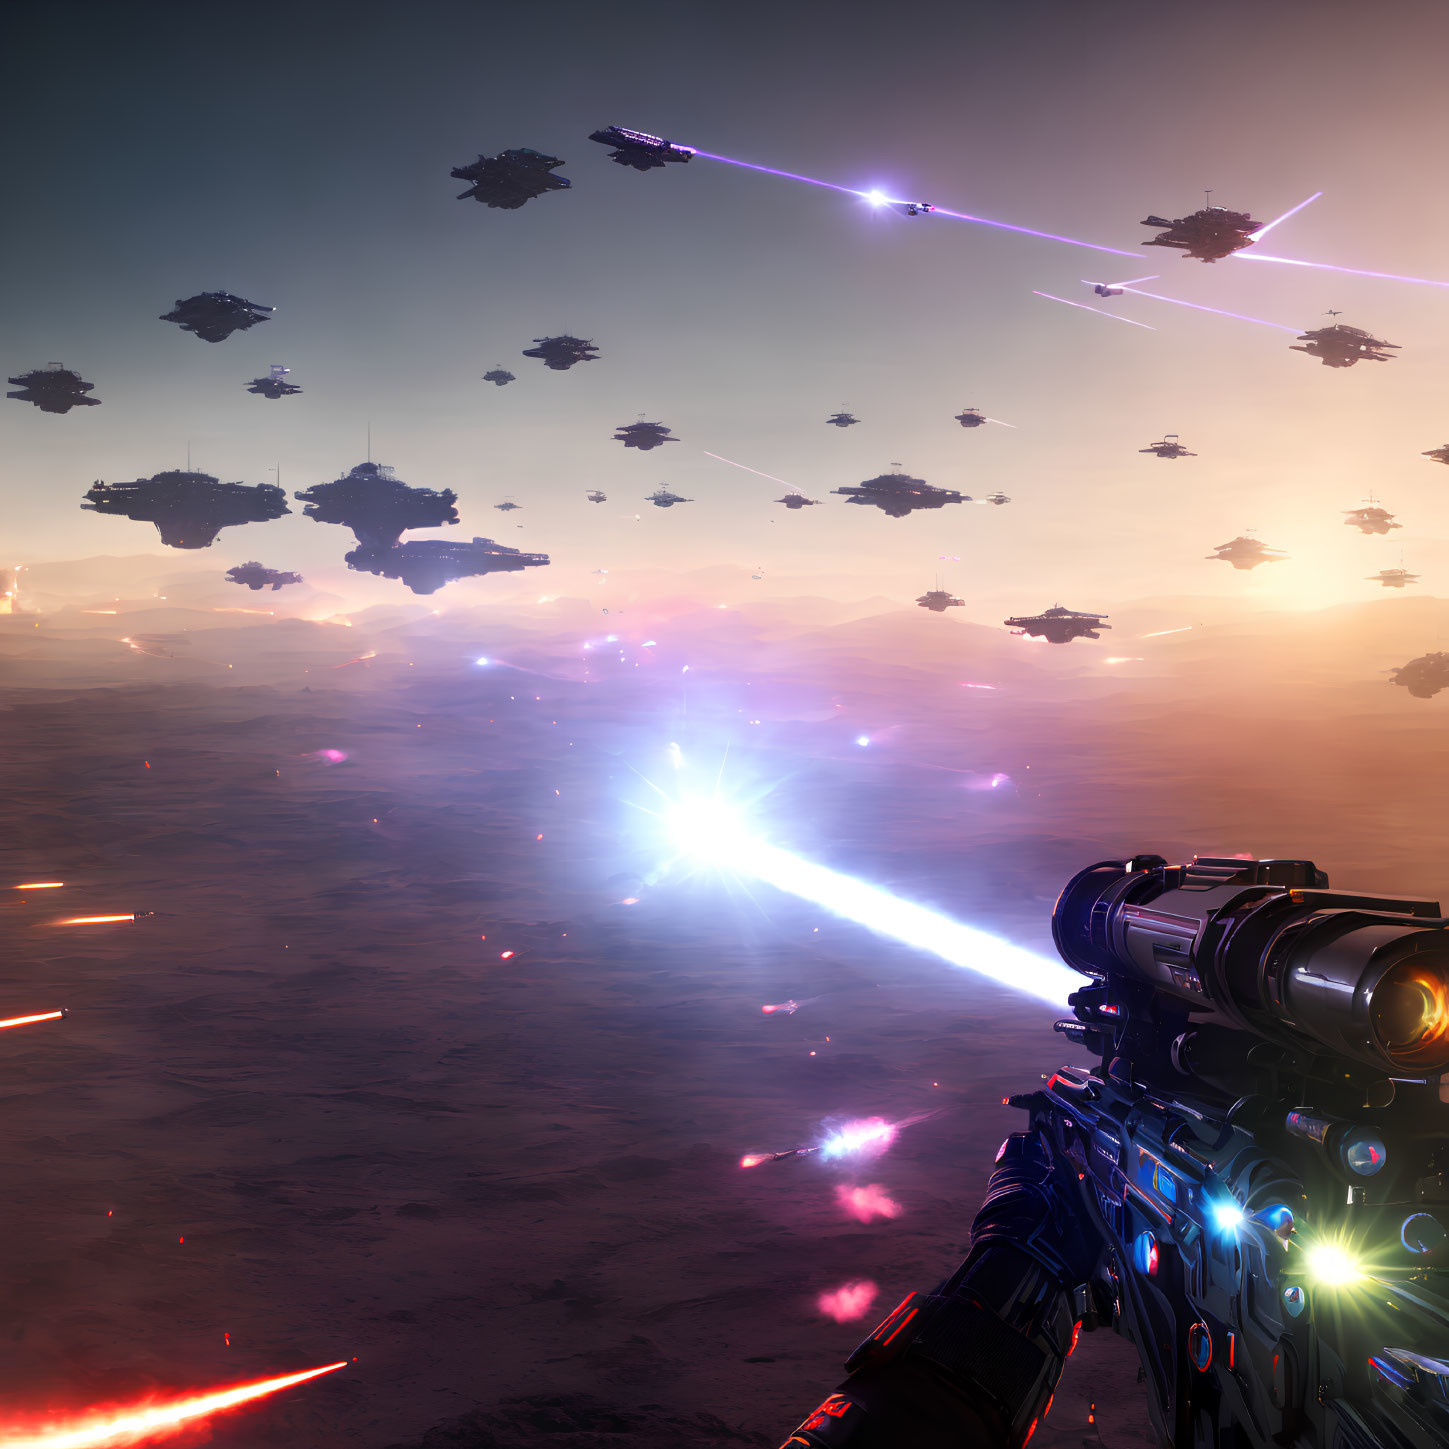 Futuristic sci-fi battle scene with alien landscape at dusk